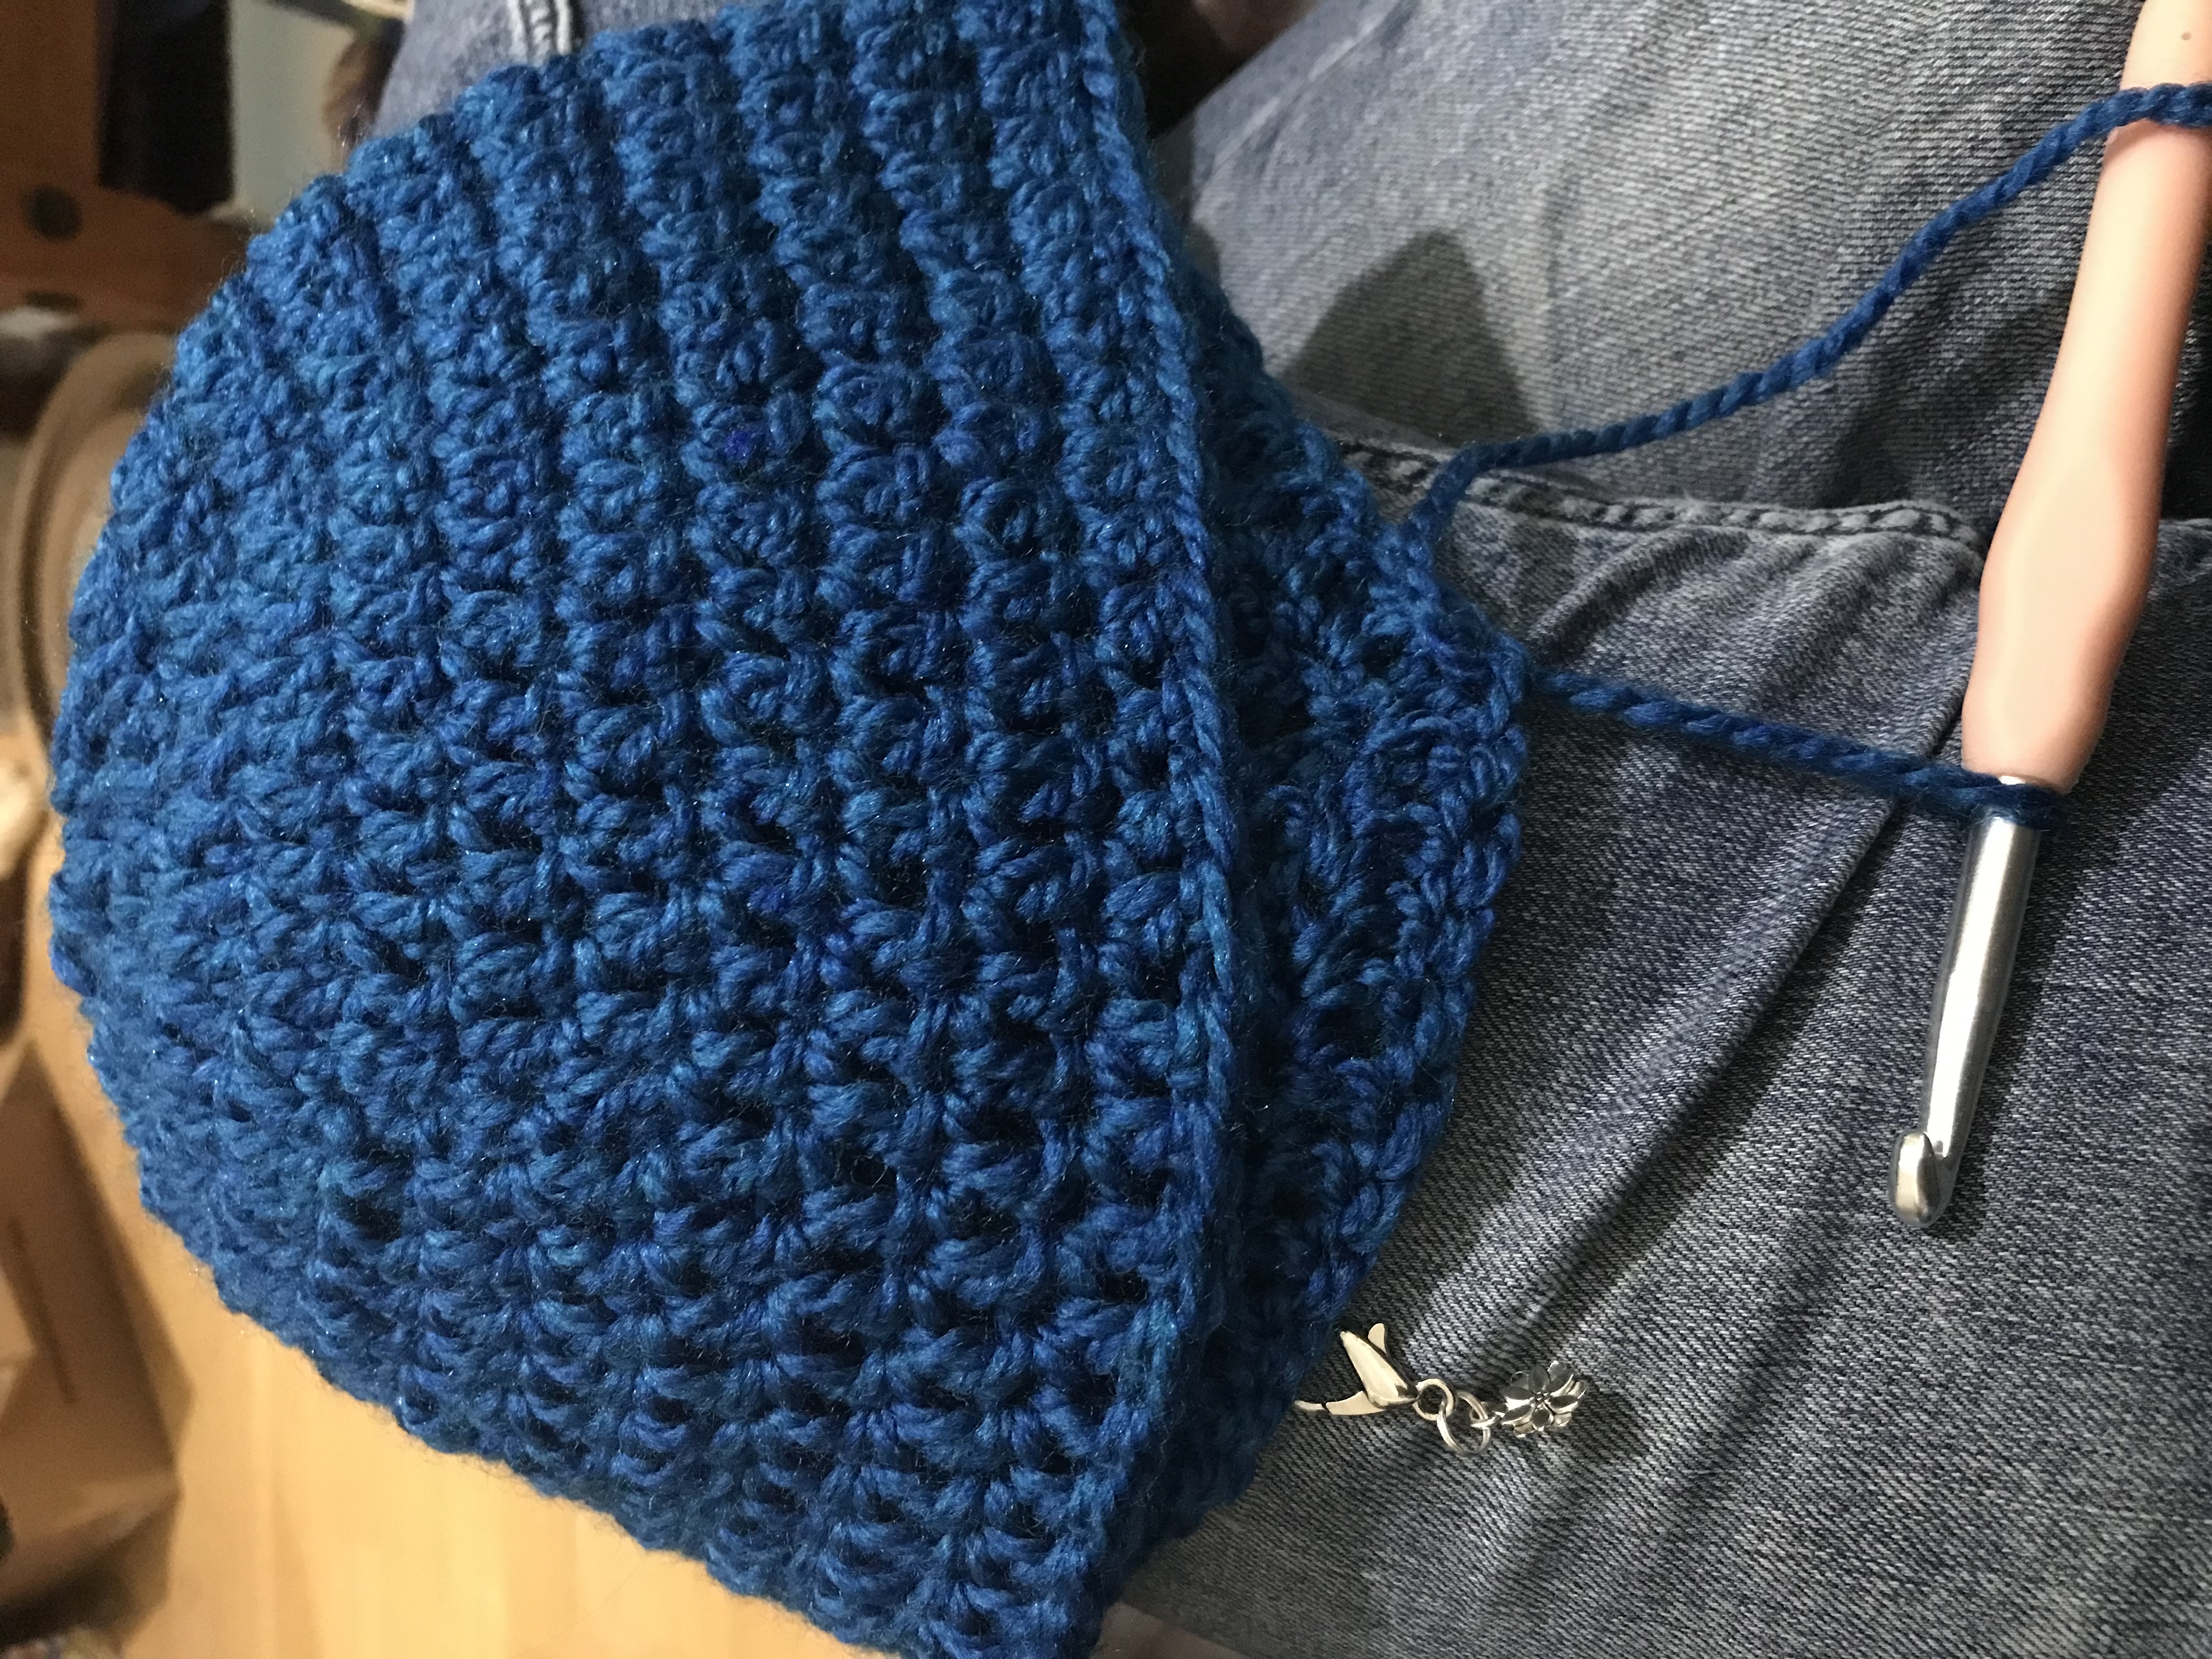 beginner's crochet hat